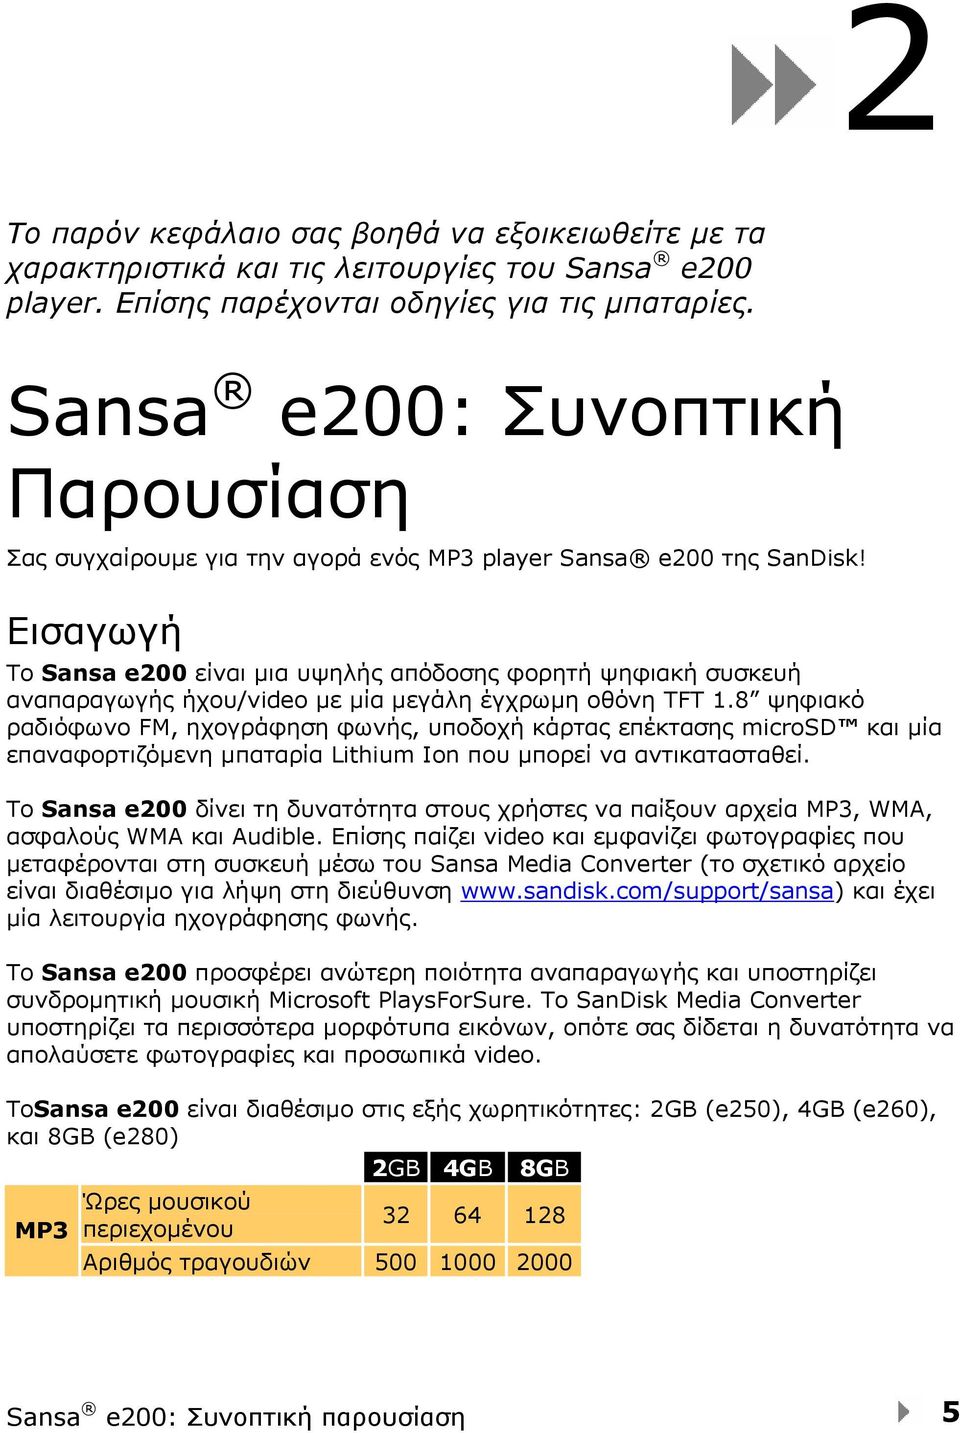 Εισαγωγή Το Sansa e200 είναι μια υψηλής απόδοσης φορητή ψηφιακή συσκευή αναπαραγωγής ήχου/video με μία μεγάλη έγχρωμη οθόνη TFT 1.